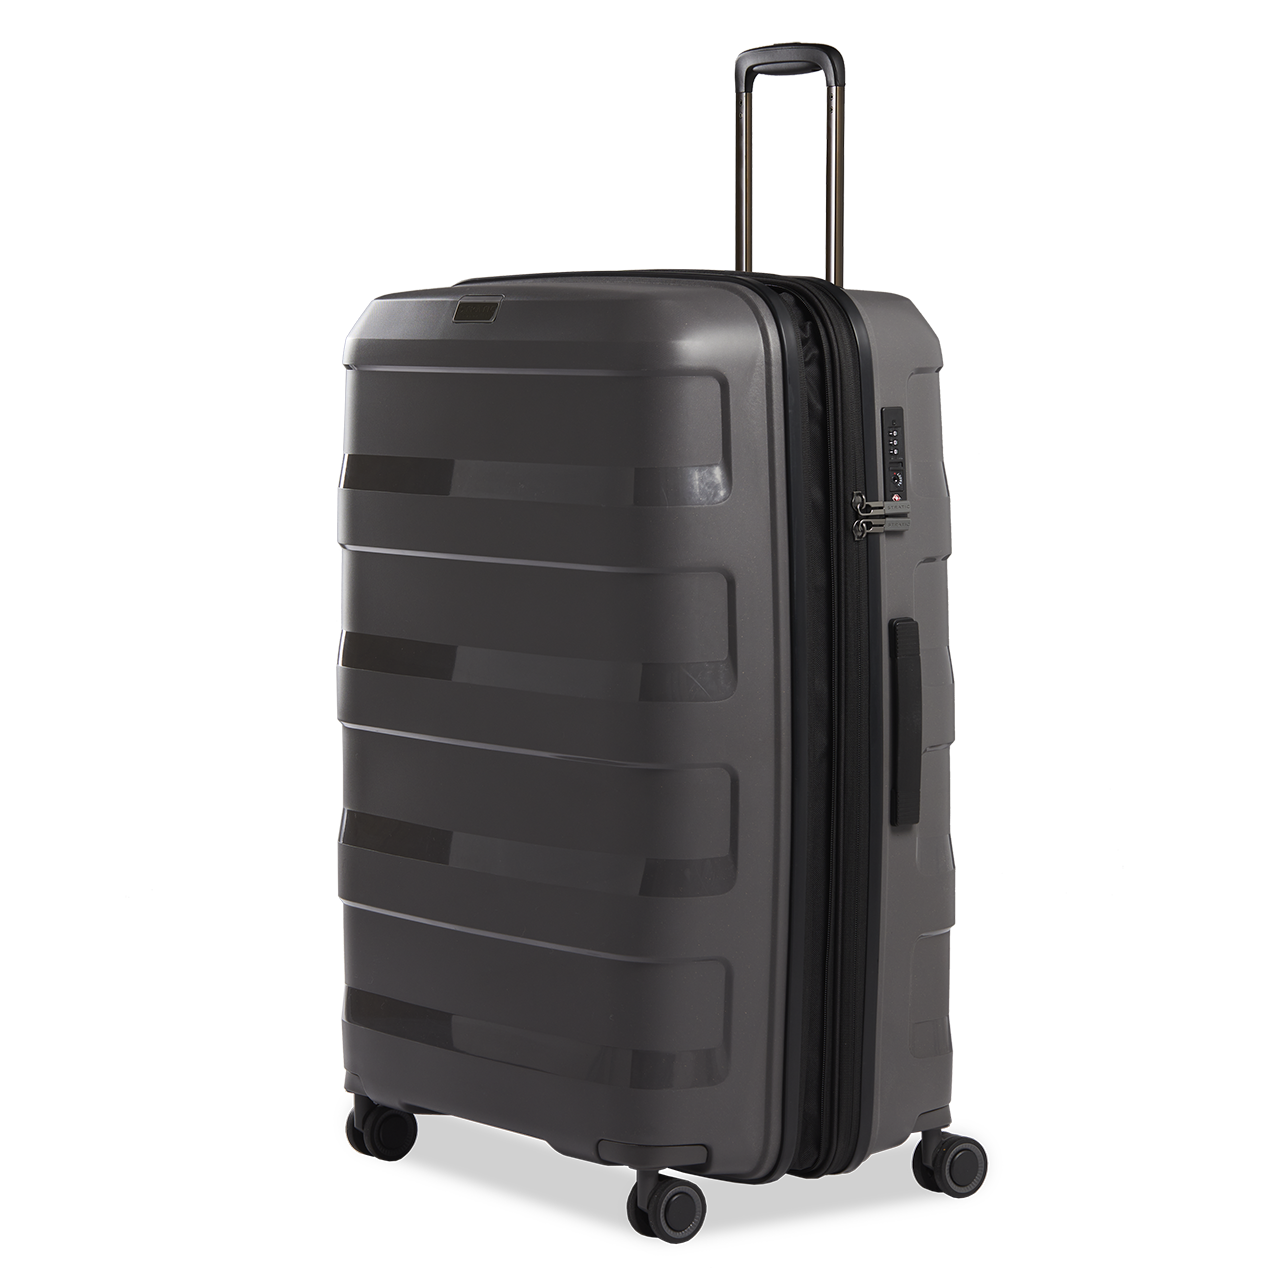 Straw + - Hartschalen Koffer L (75 cm), 4 Doppelrollen, TSA Schloss,  Reißverschlussvariante, Erweiterungsfalte dark grey